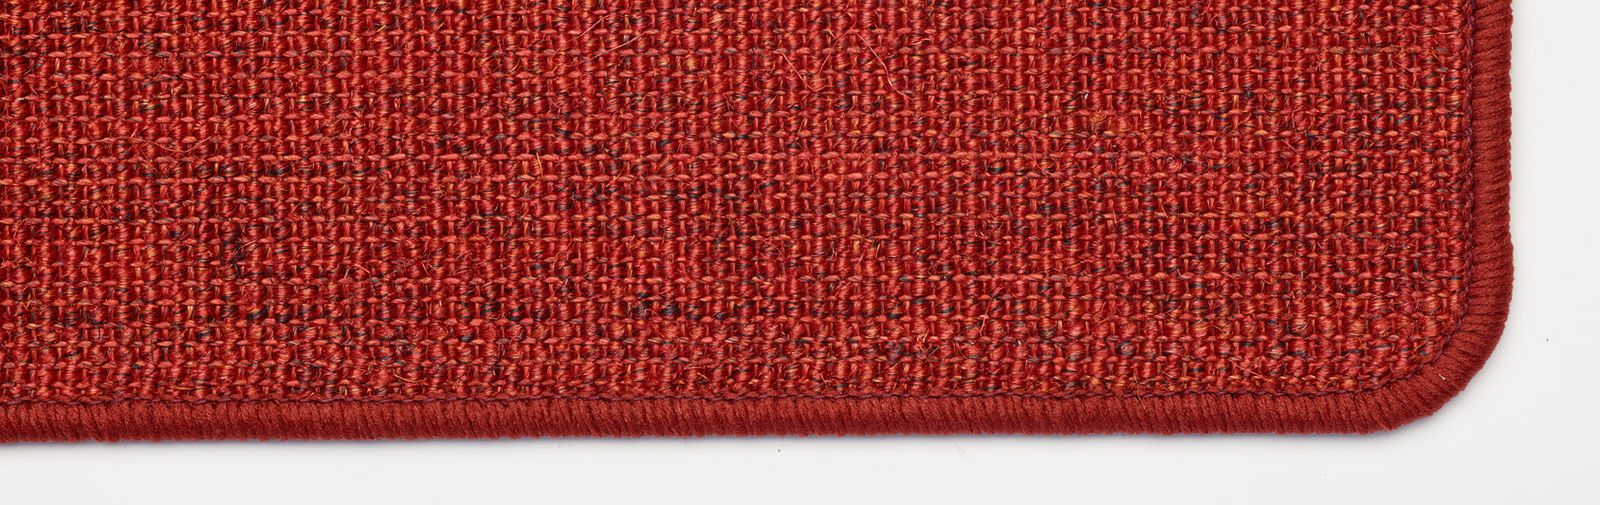 dywany kościelne sizalowe kolor czerwony kod koloru 7401